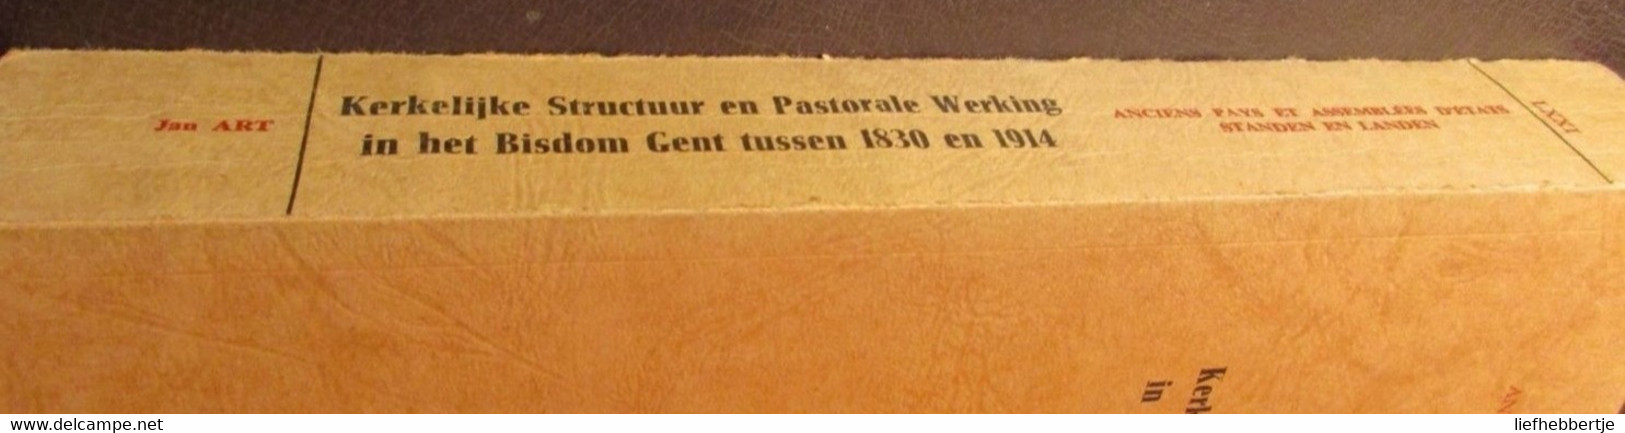 Kerkelijke Structuur En Pastorale Werking In Het Bisdom Gent Tussen 1830 En 1914 - Door Jan Art  Yy - Historia